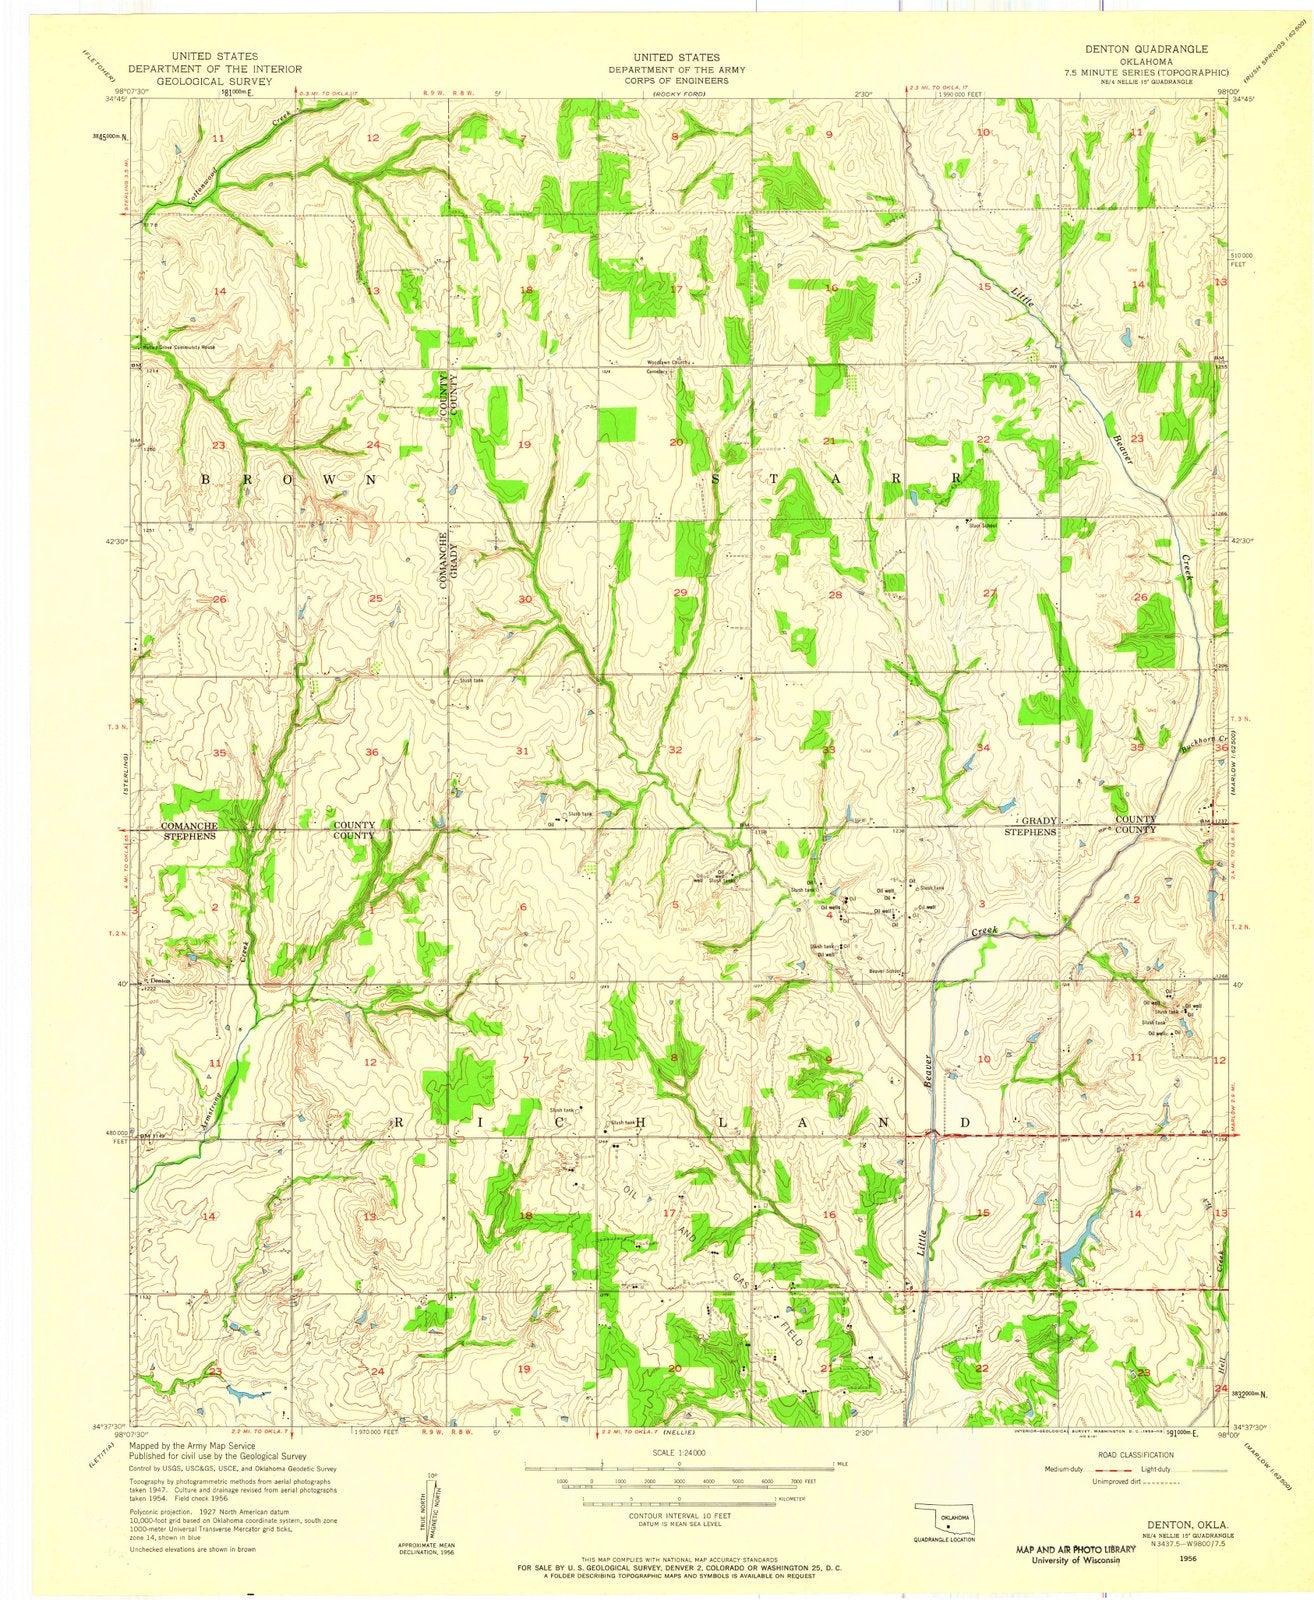 1956 Denton, OK - Oklahoma - USGS Topographic Map